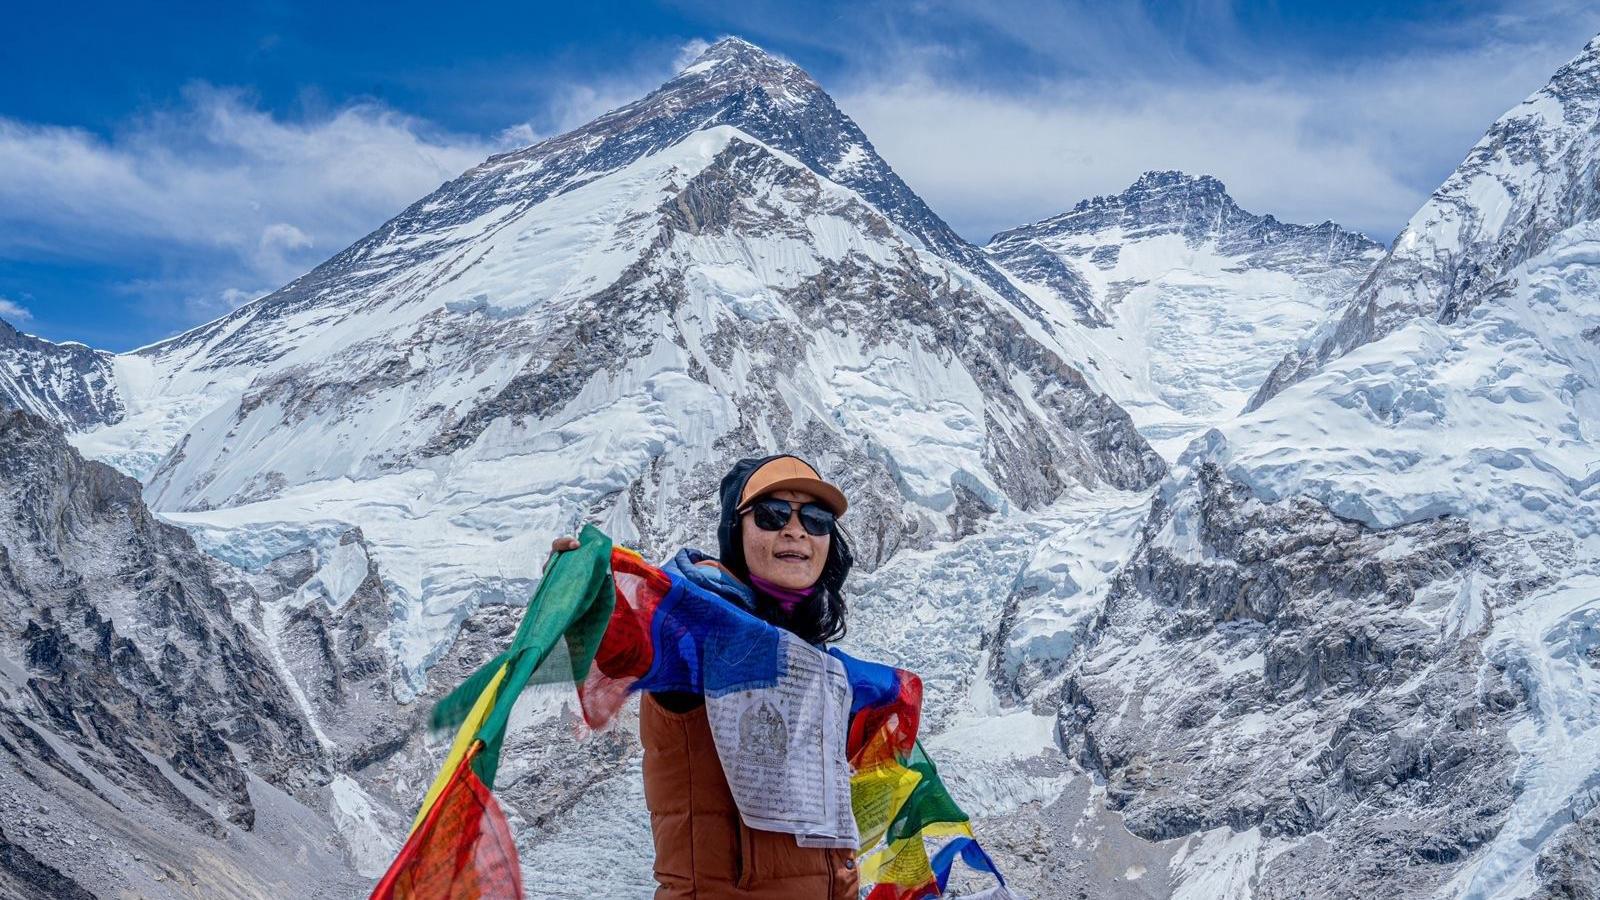 라마는 배경에 자리한 에베레스트산 꼭대기에 부처의 깃발을 꽂았다